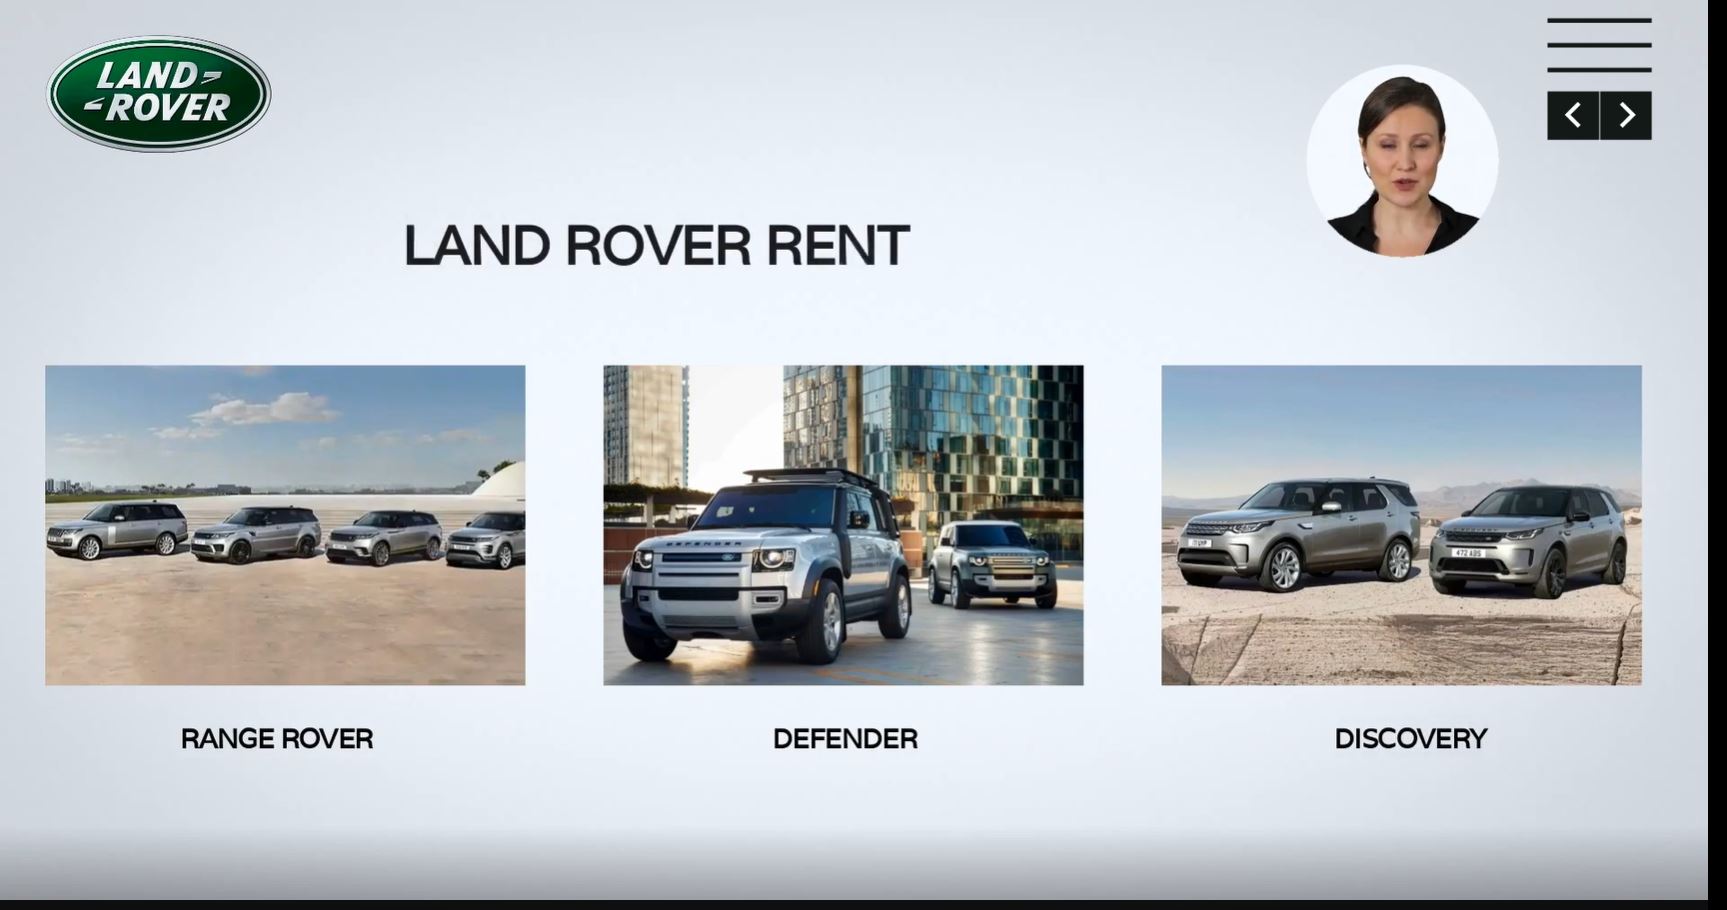 El nuevo Programa Land Rover Rent ya esta disponible – Infórmate y consigue tu solución en Deysa Jaguar Land Rover.